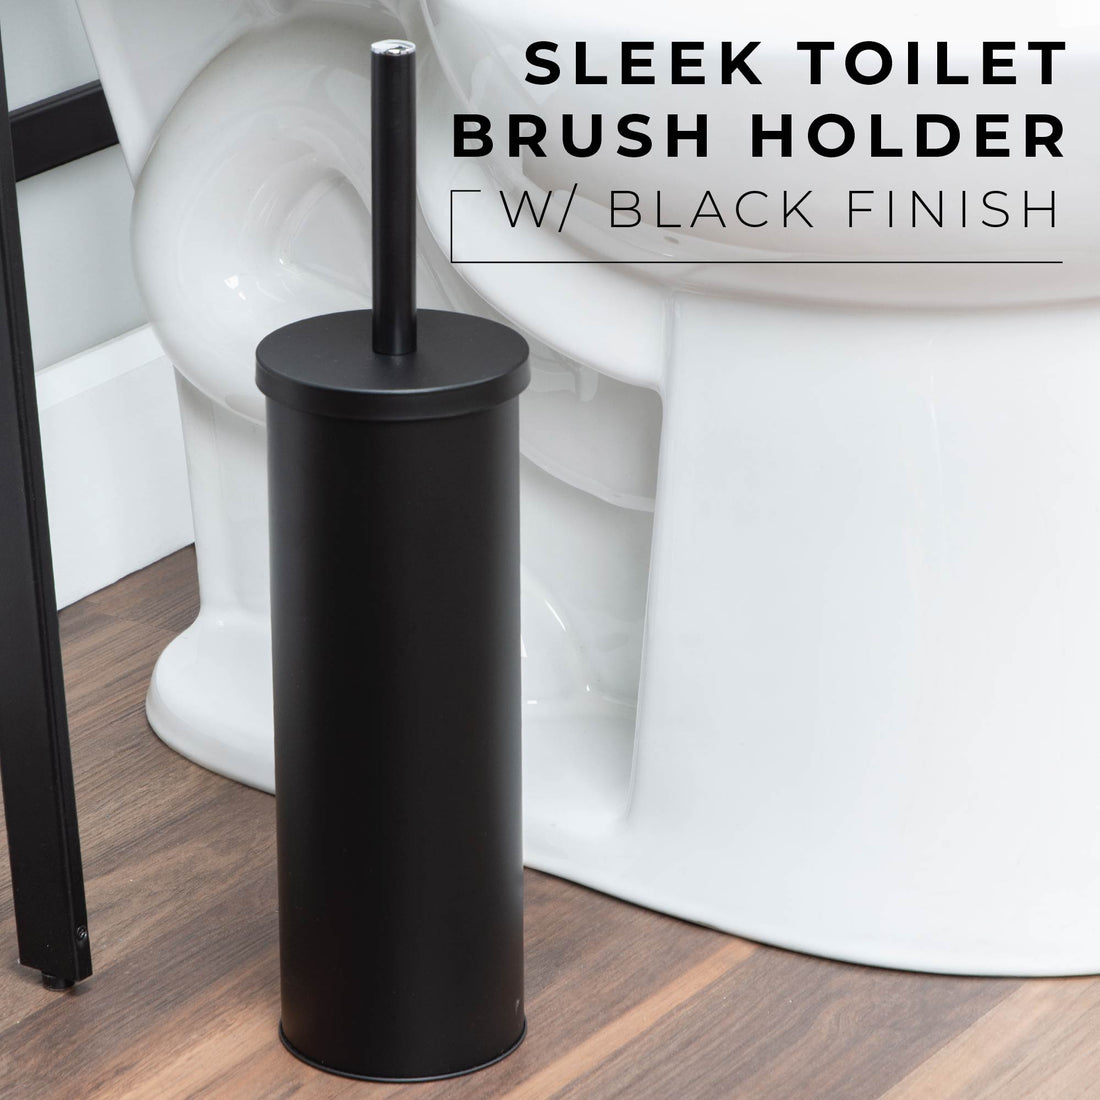 Toilet Brush and Holder (Matte Black Finish) - Utility sinks vanites Tehila